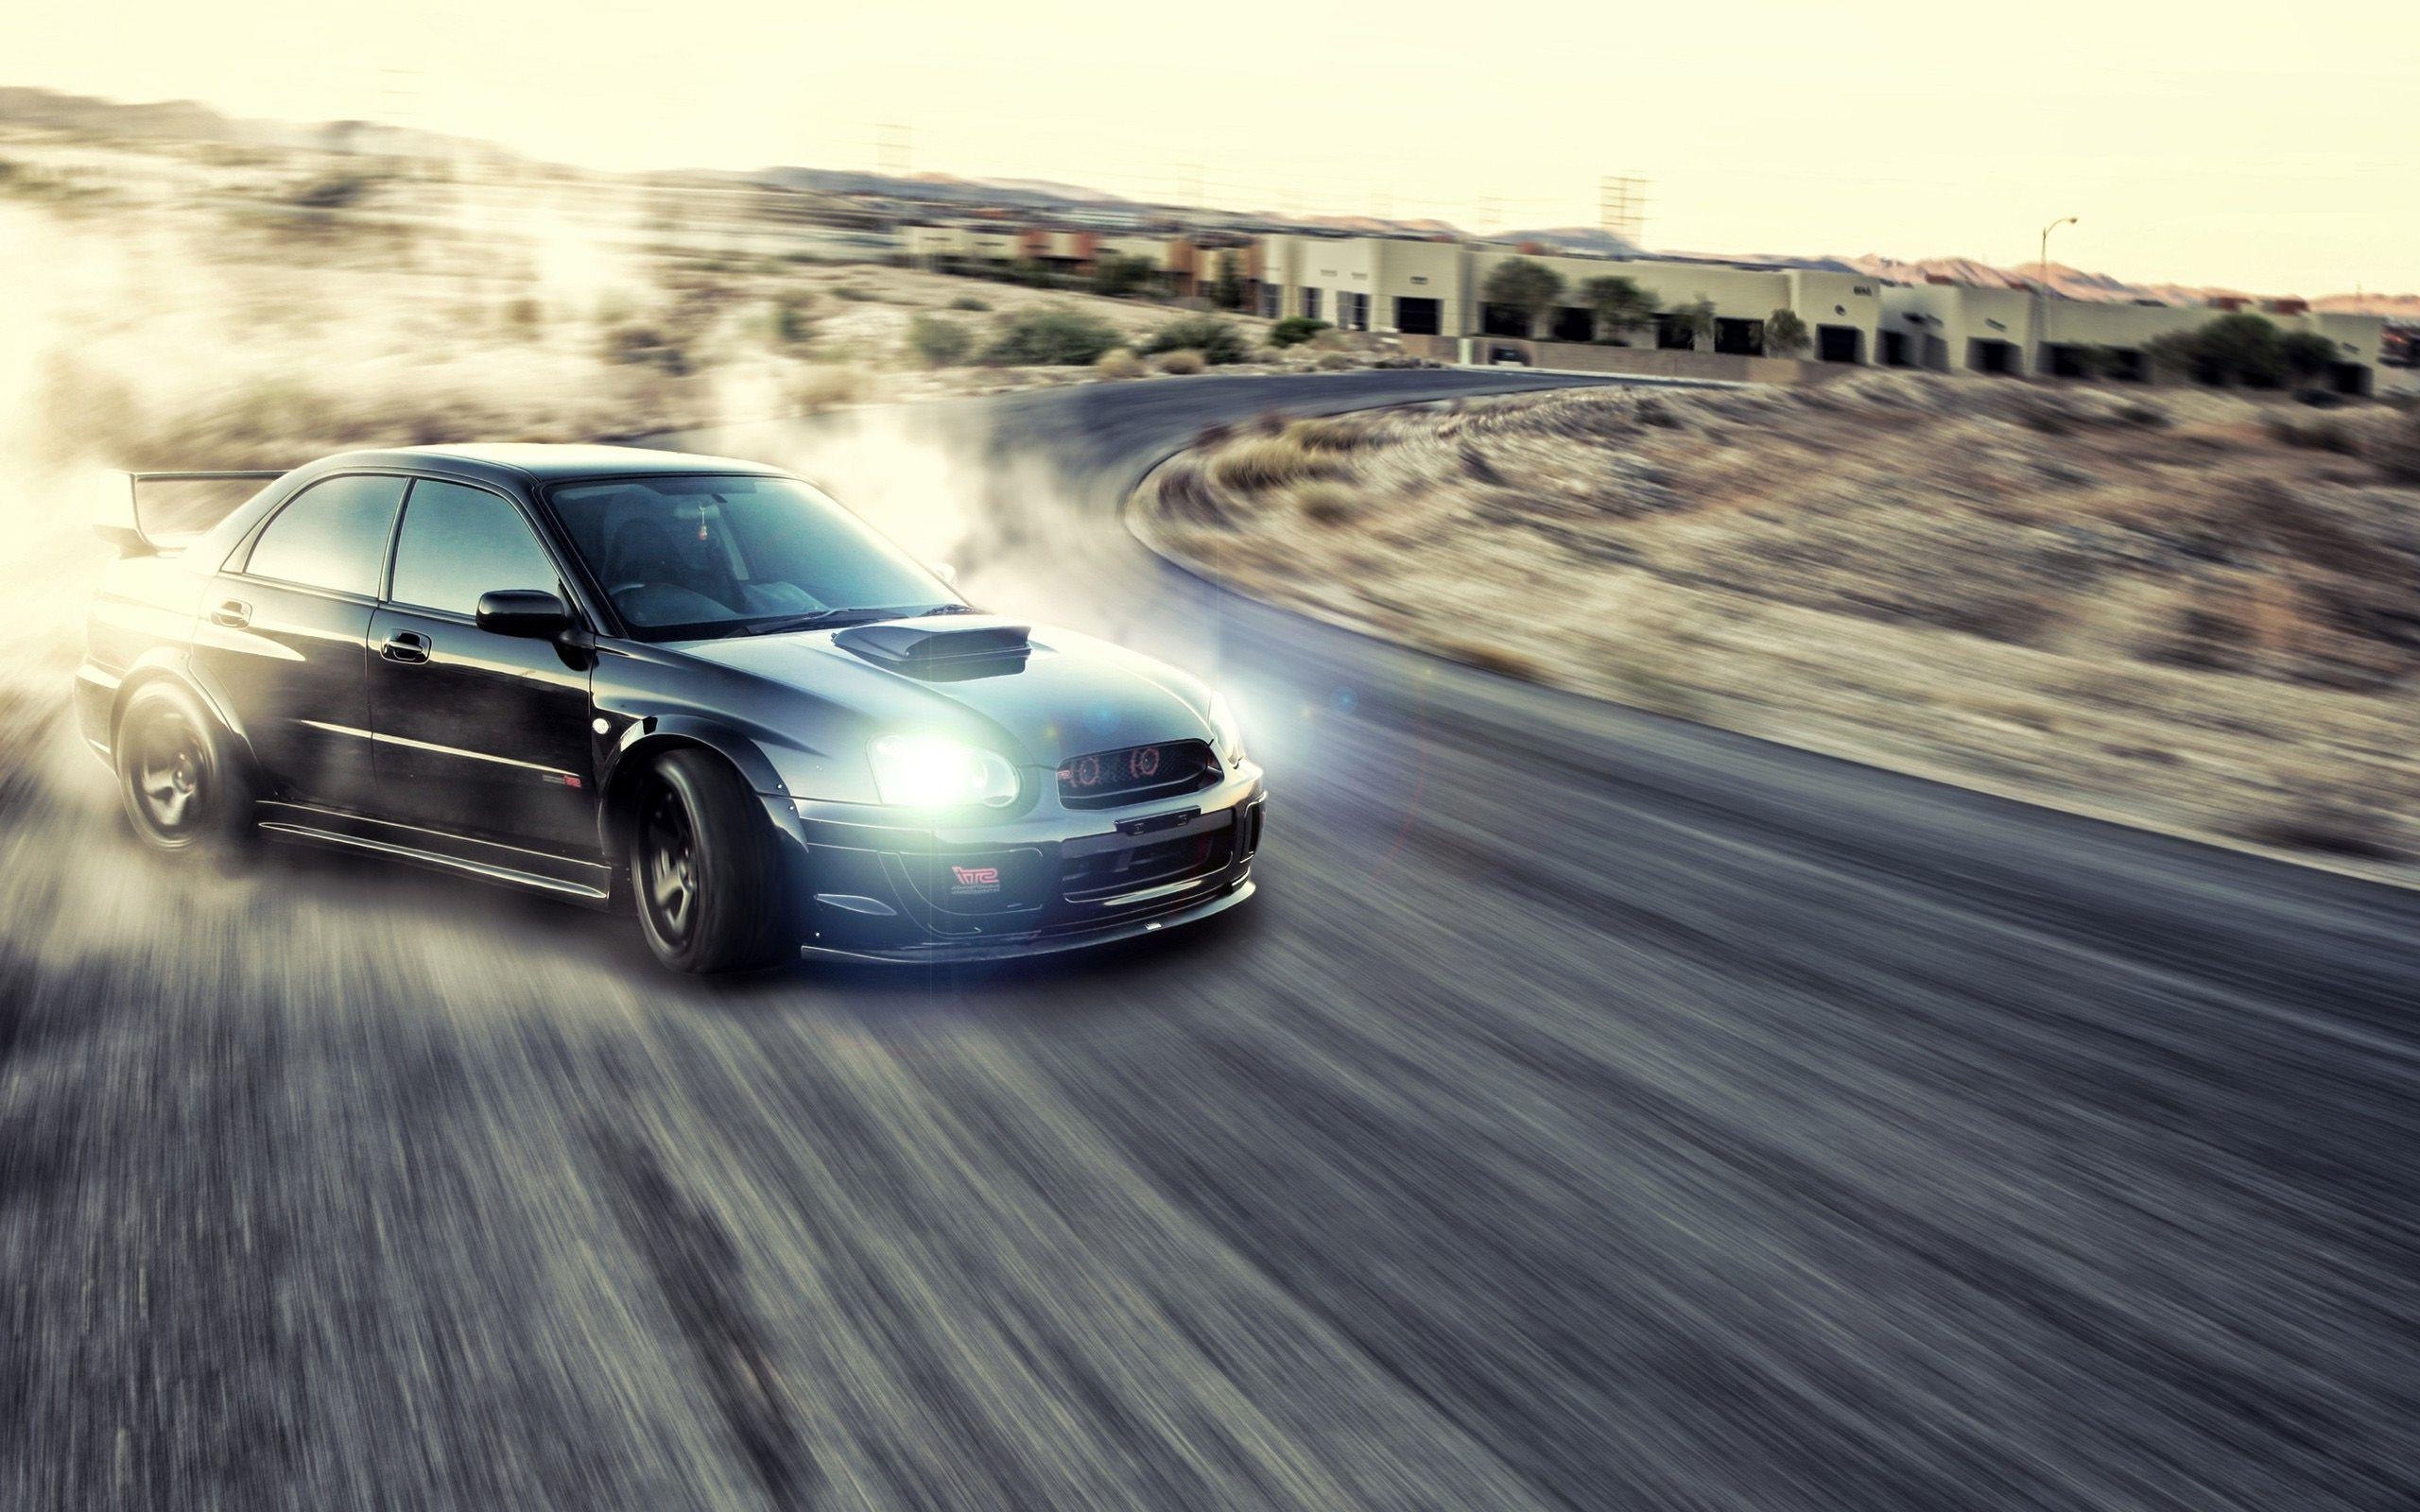 Drifting: Oversteered Subaru, Reap spoiler, Bonnet scoop, Racing sport. 2560x1600 HD Wallpaper.